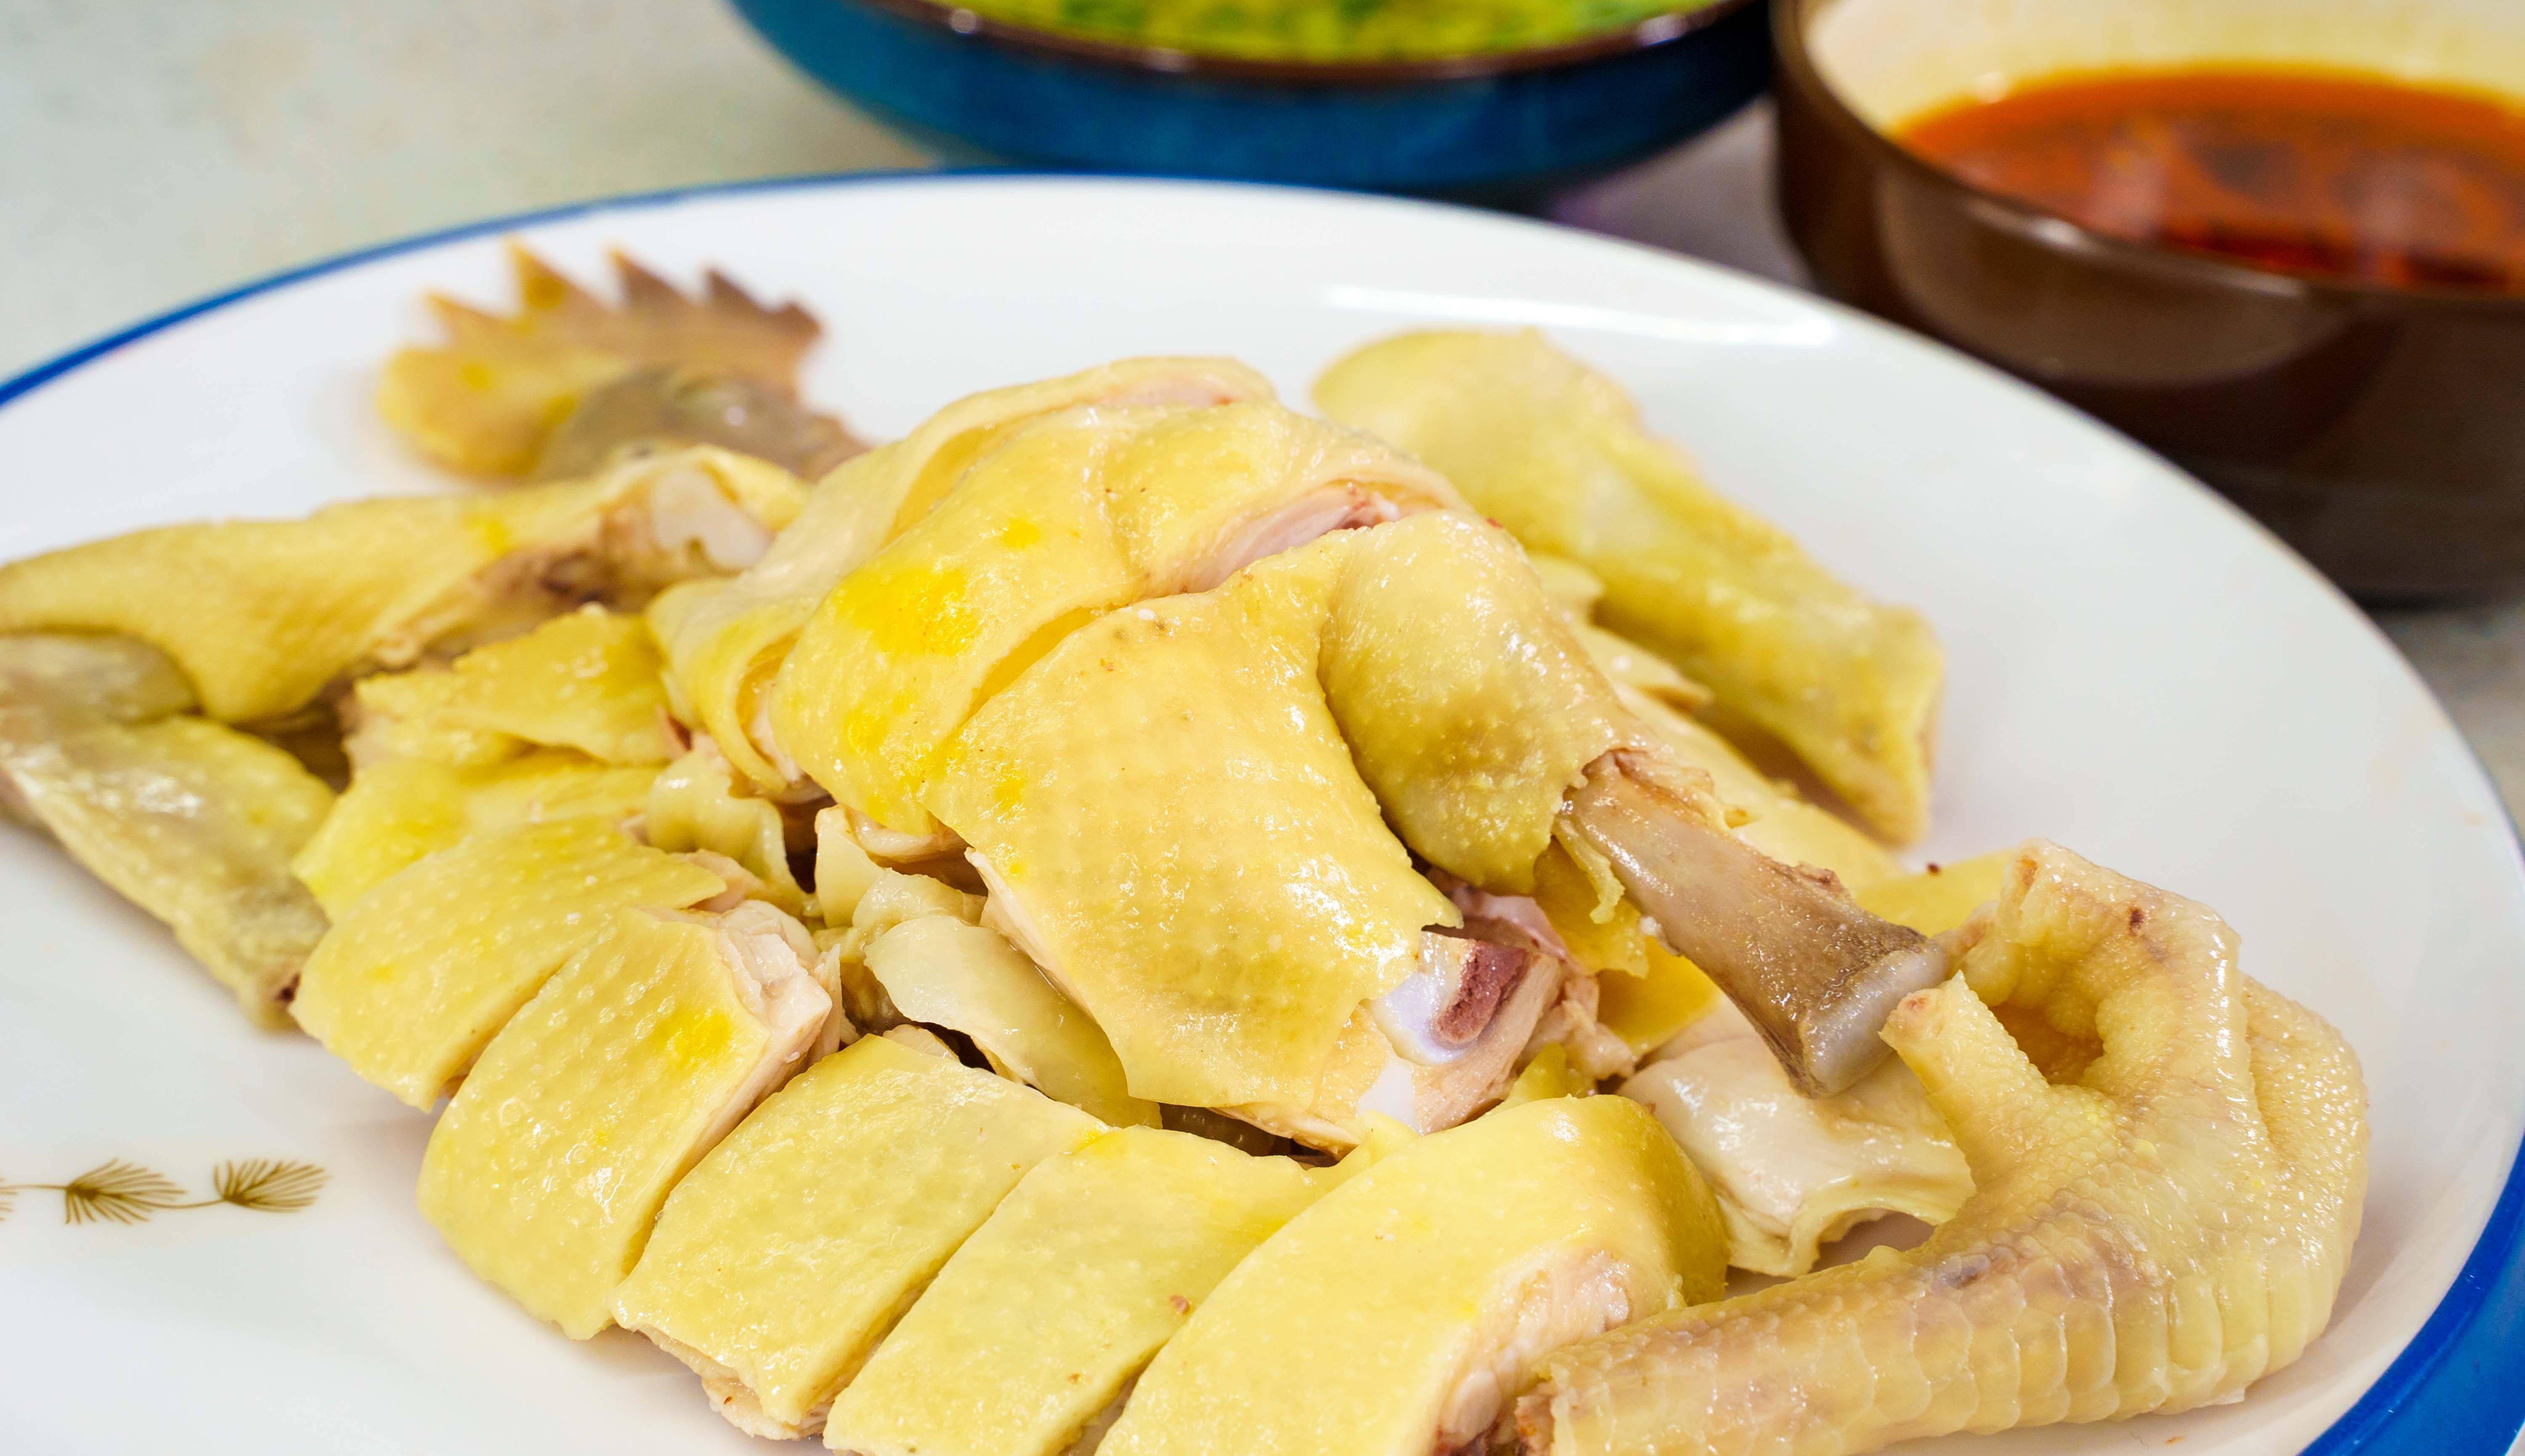 广东白切鸡做法:2种蘸料,不同吃法步骤简单,肉质鲜嫩又好吃